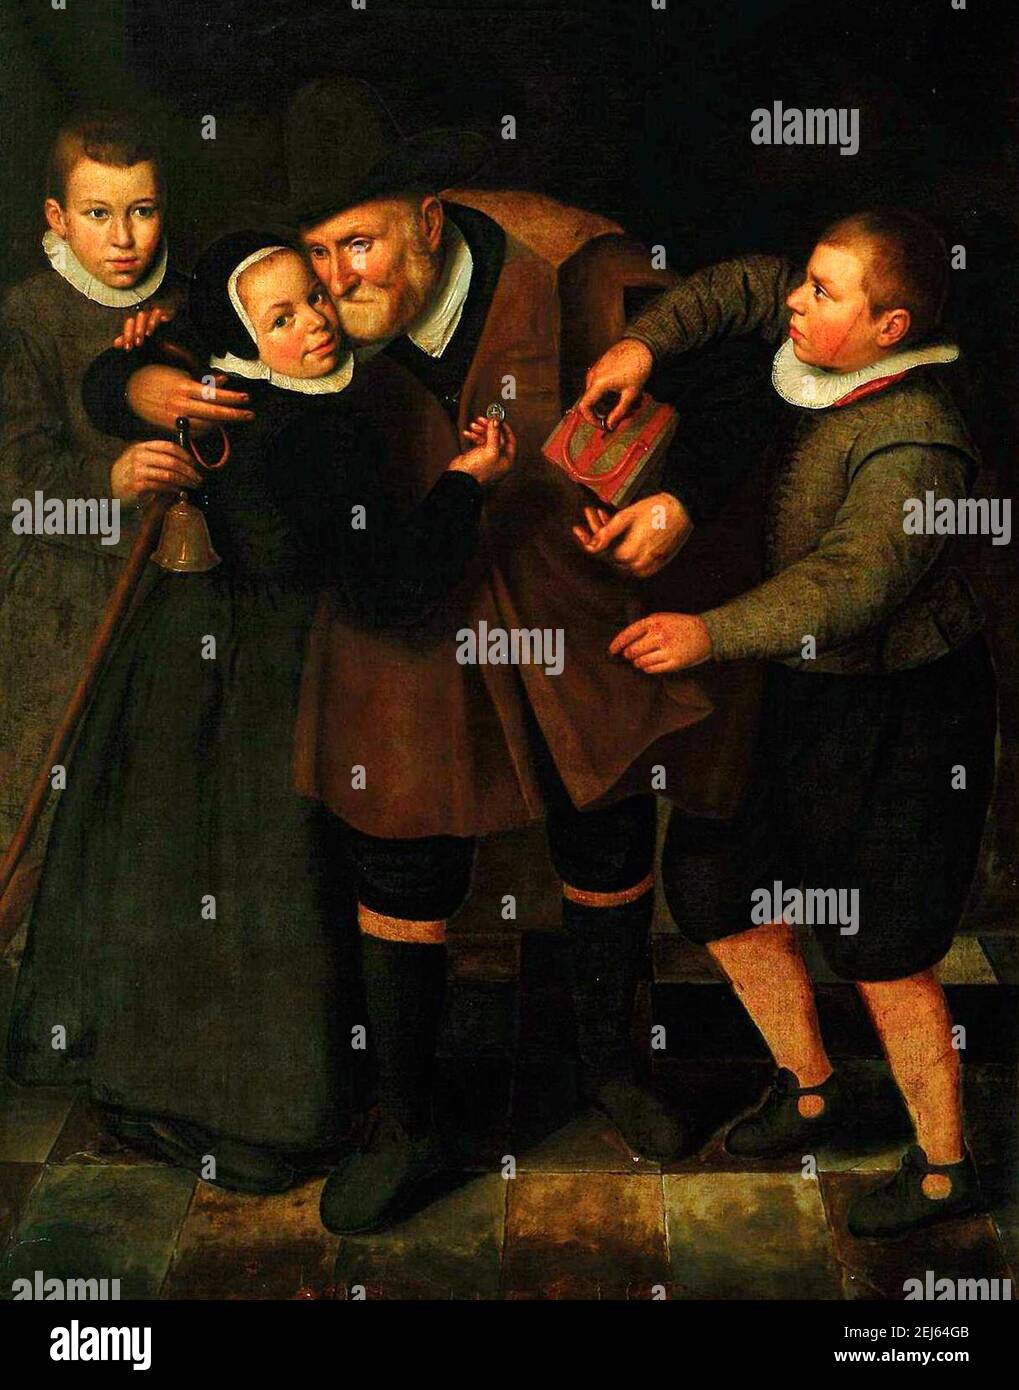 Alter Mann dankbar für Almosen - Cornelis Engelsz, um 1625 Stockfoto